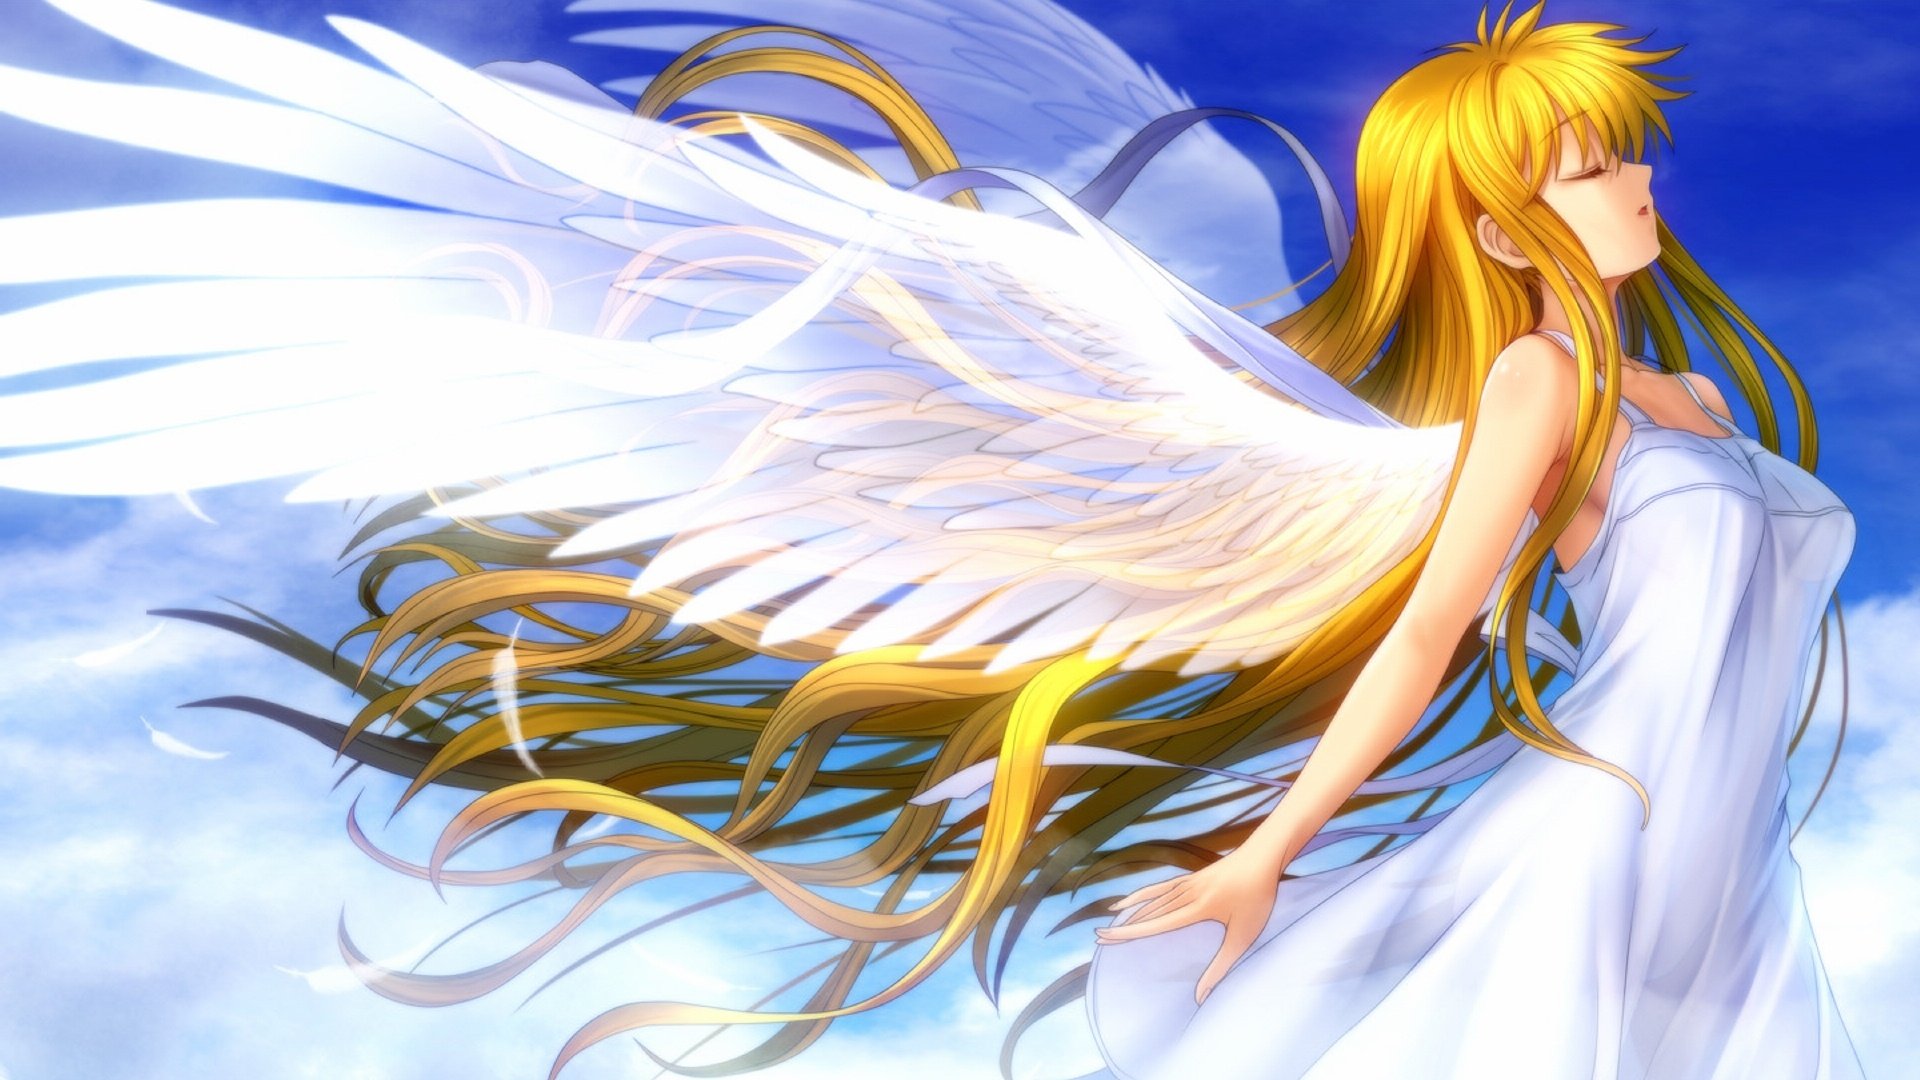 【奇幻】天使图一览 Vol1 - 知乎